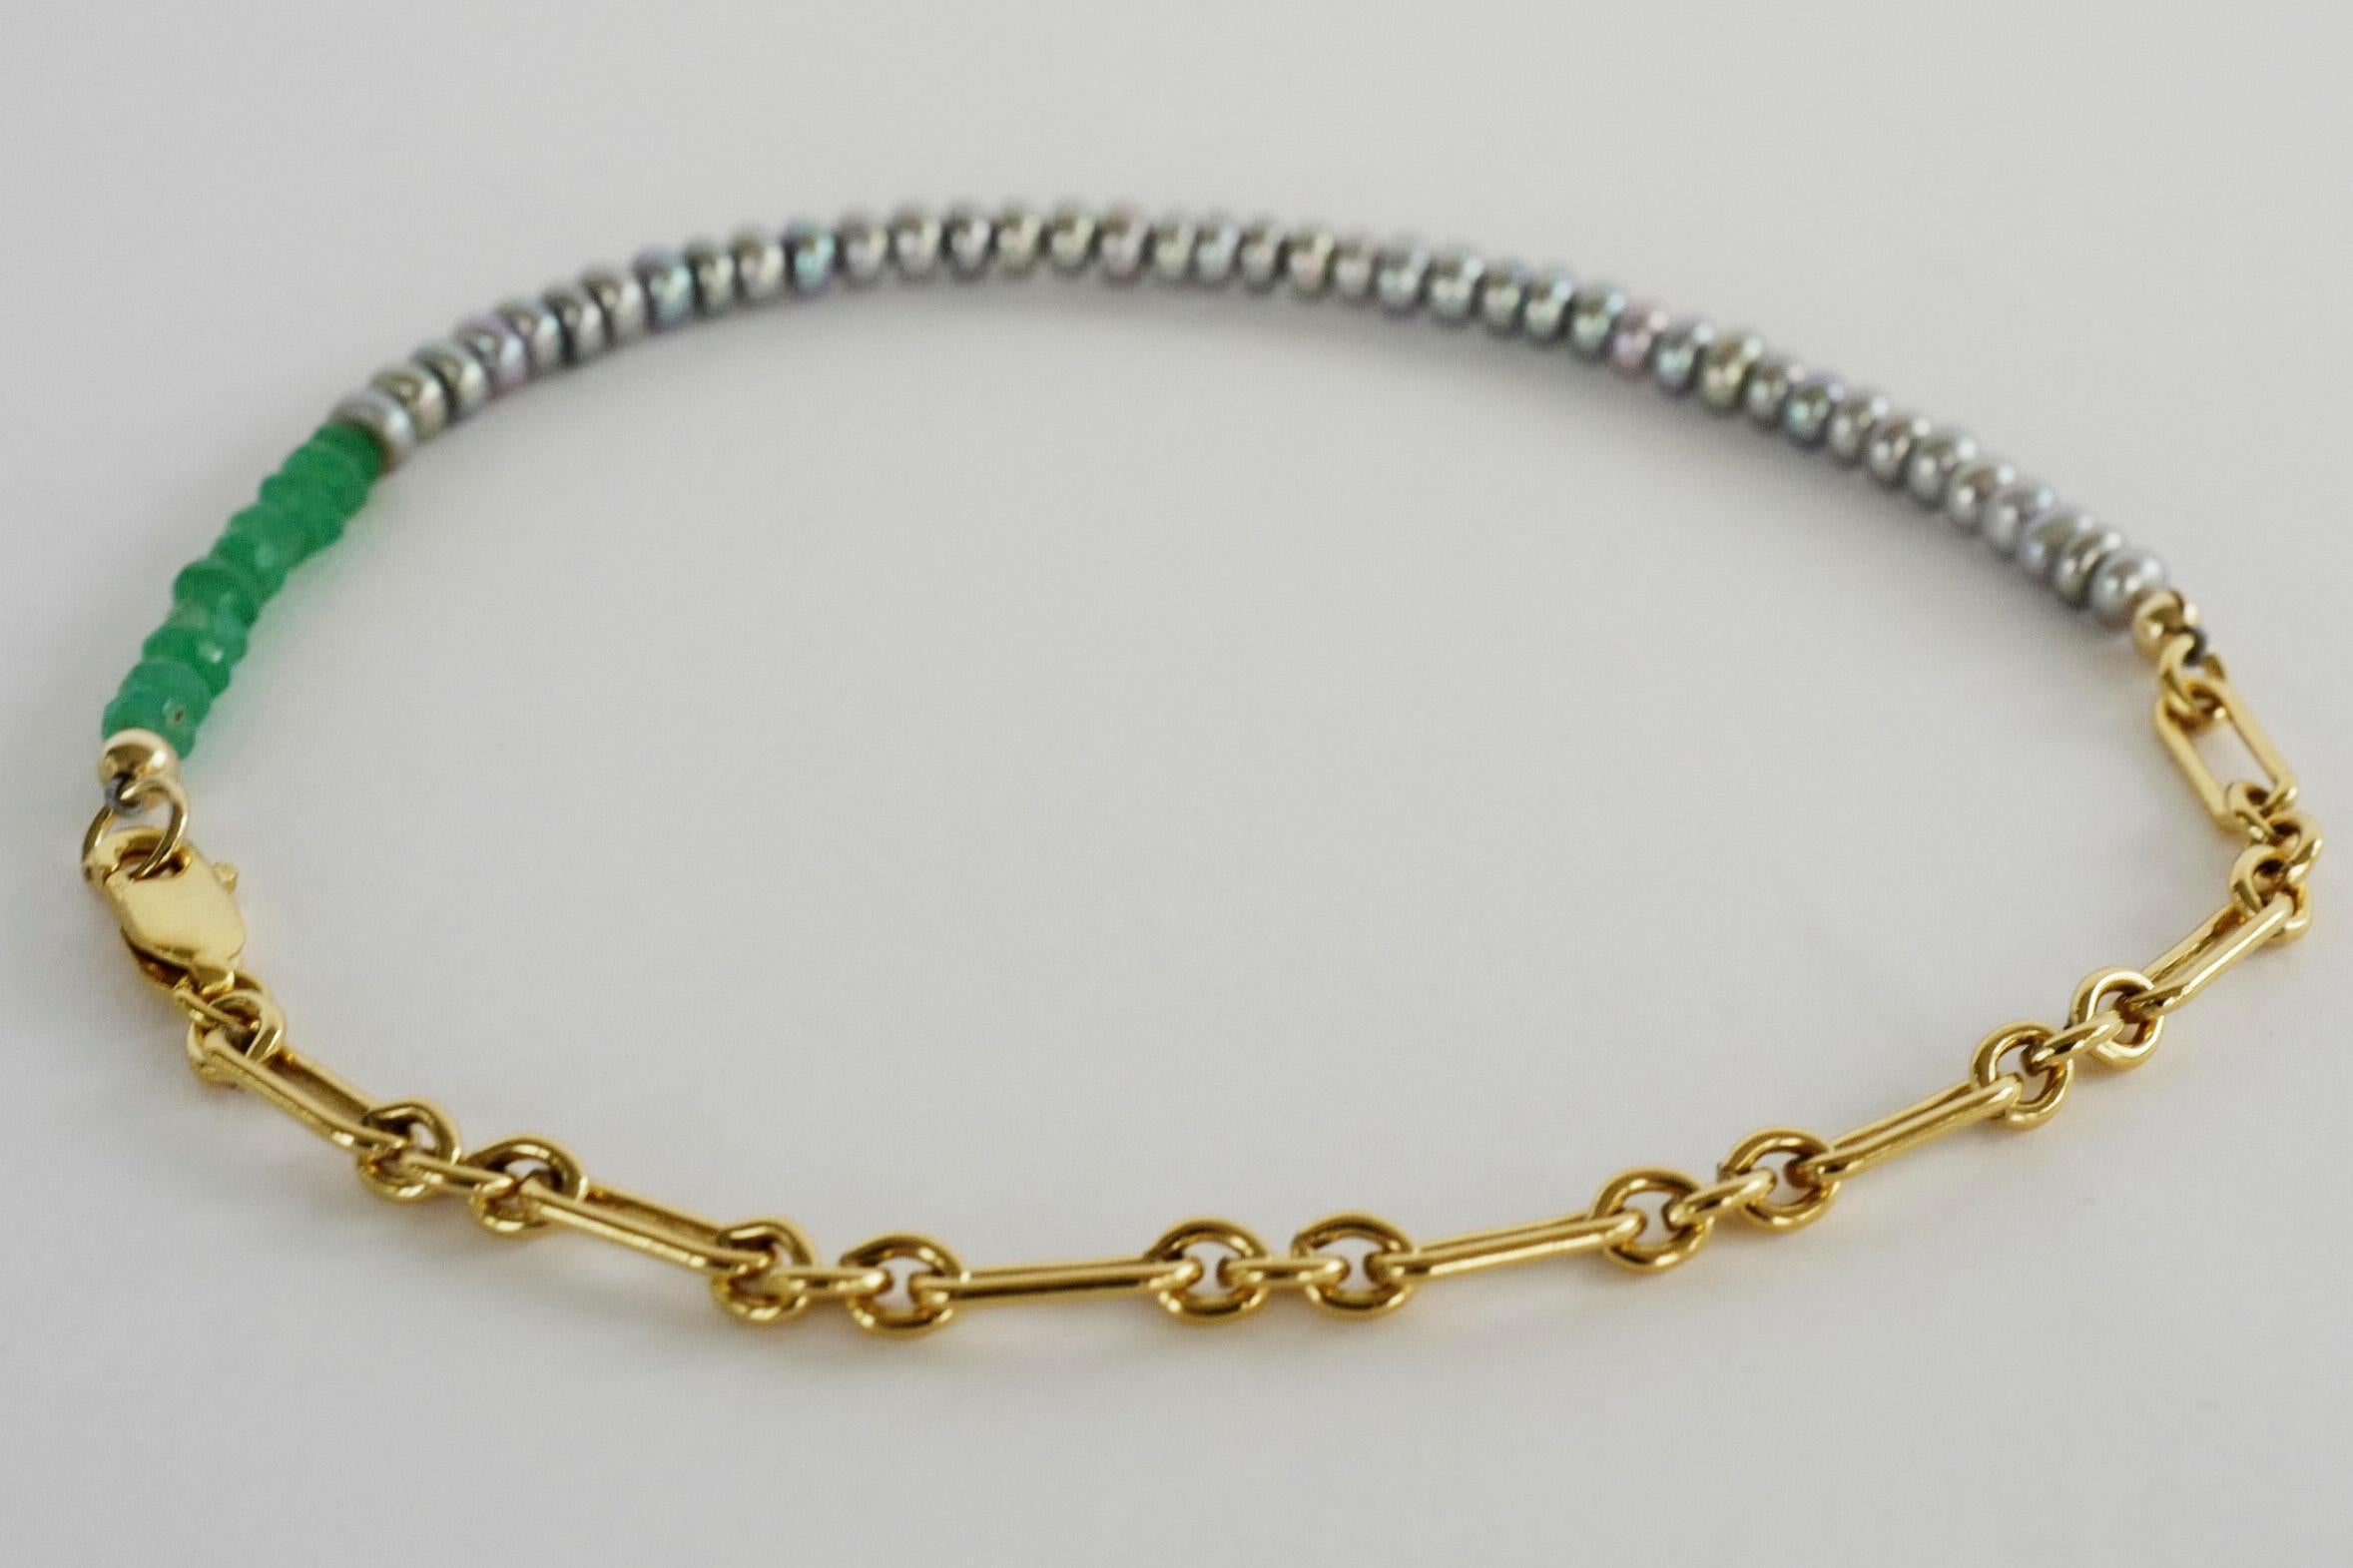 Schwarze Perle Chrysopras Knöchel-Armband Perlen Gold gefüllt Kette J Dauphin
kann auch als Armband verwendet werden, da die Kette verstellbar ist

